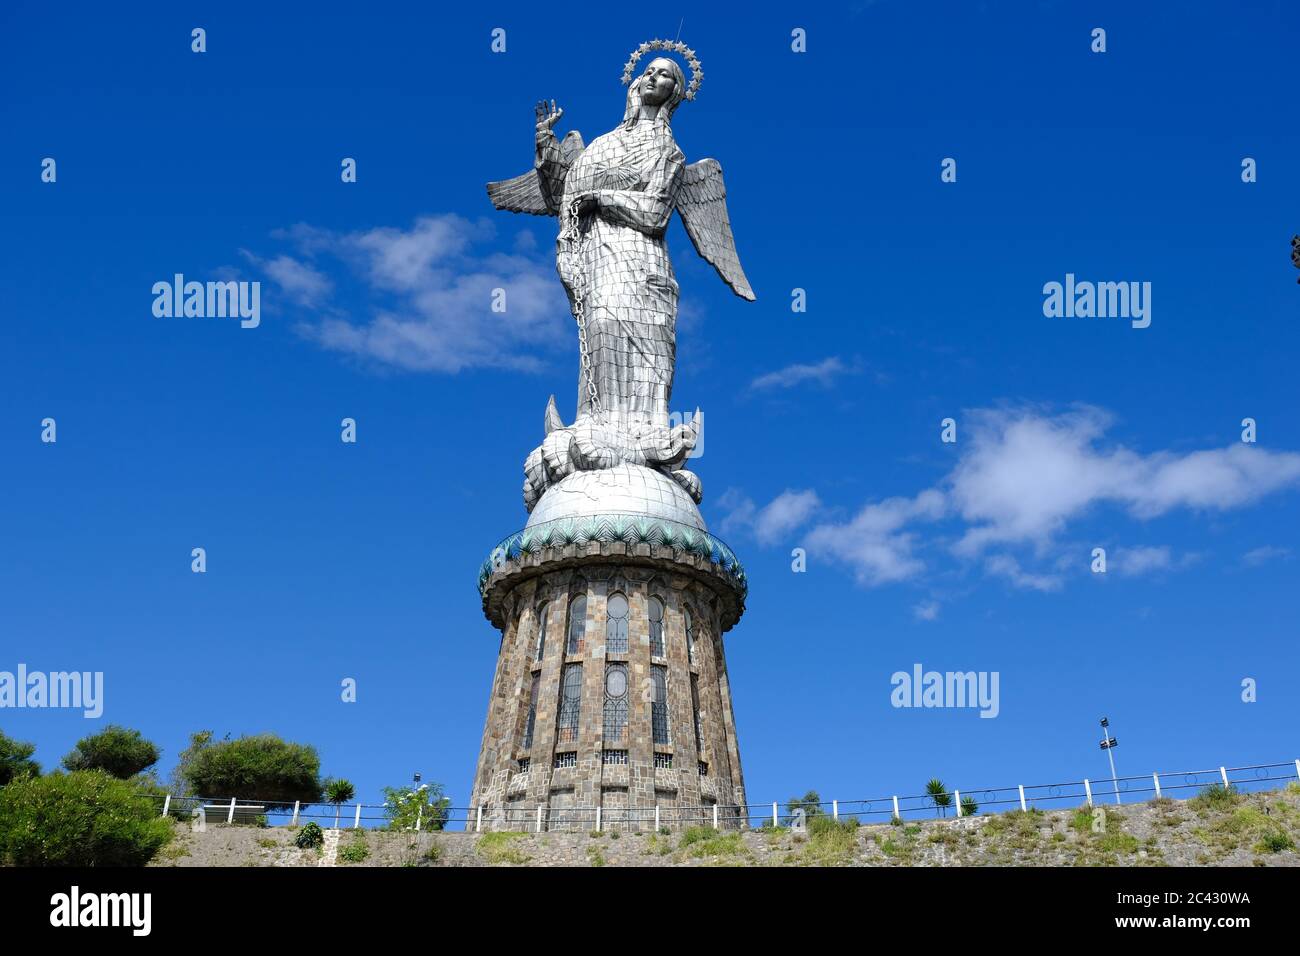 Ecuador Quito Virgin of El Panecillo Hilltop statue winged Virgin Mary Stock Photo